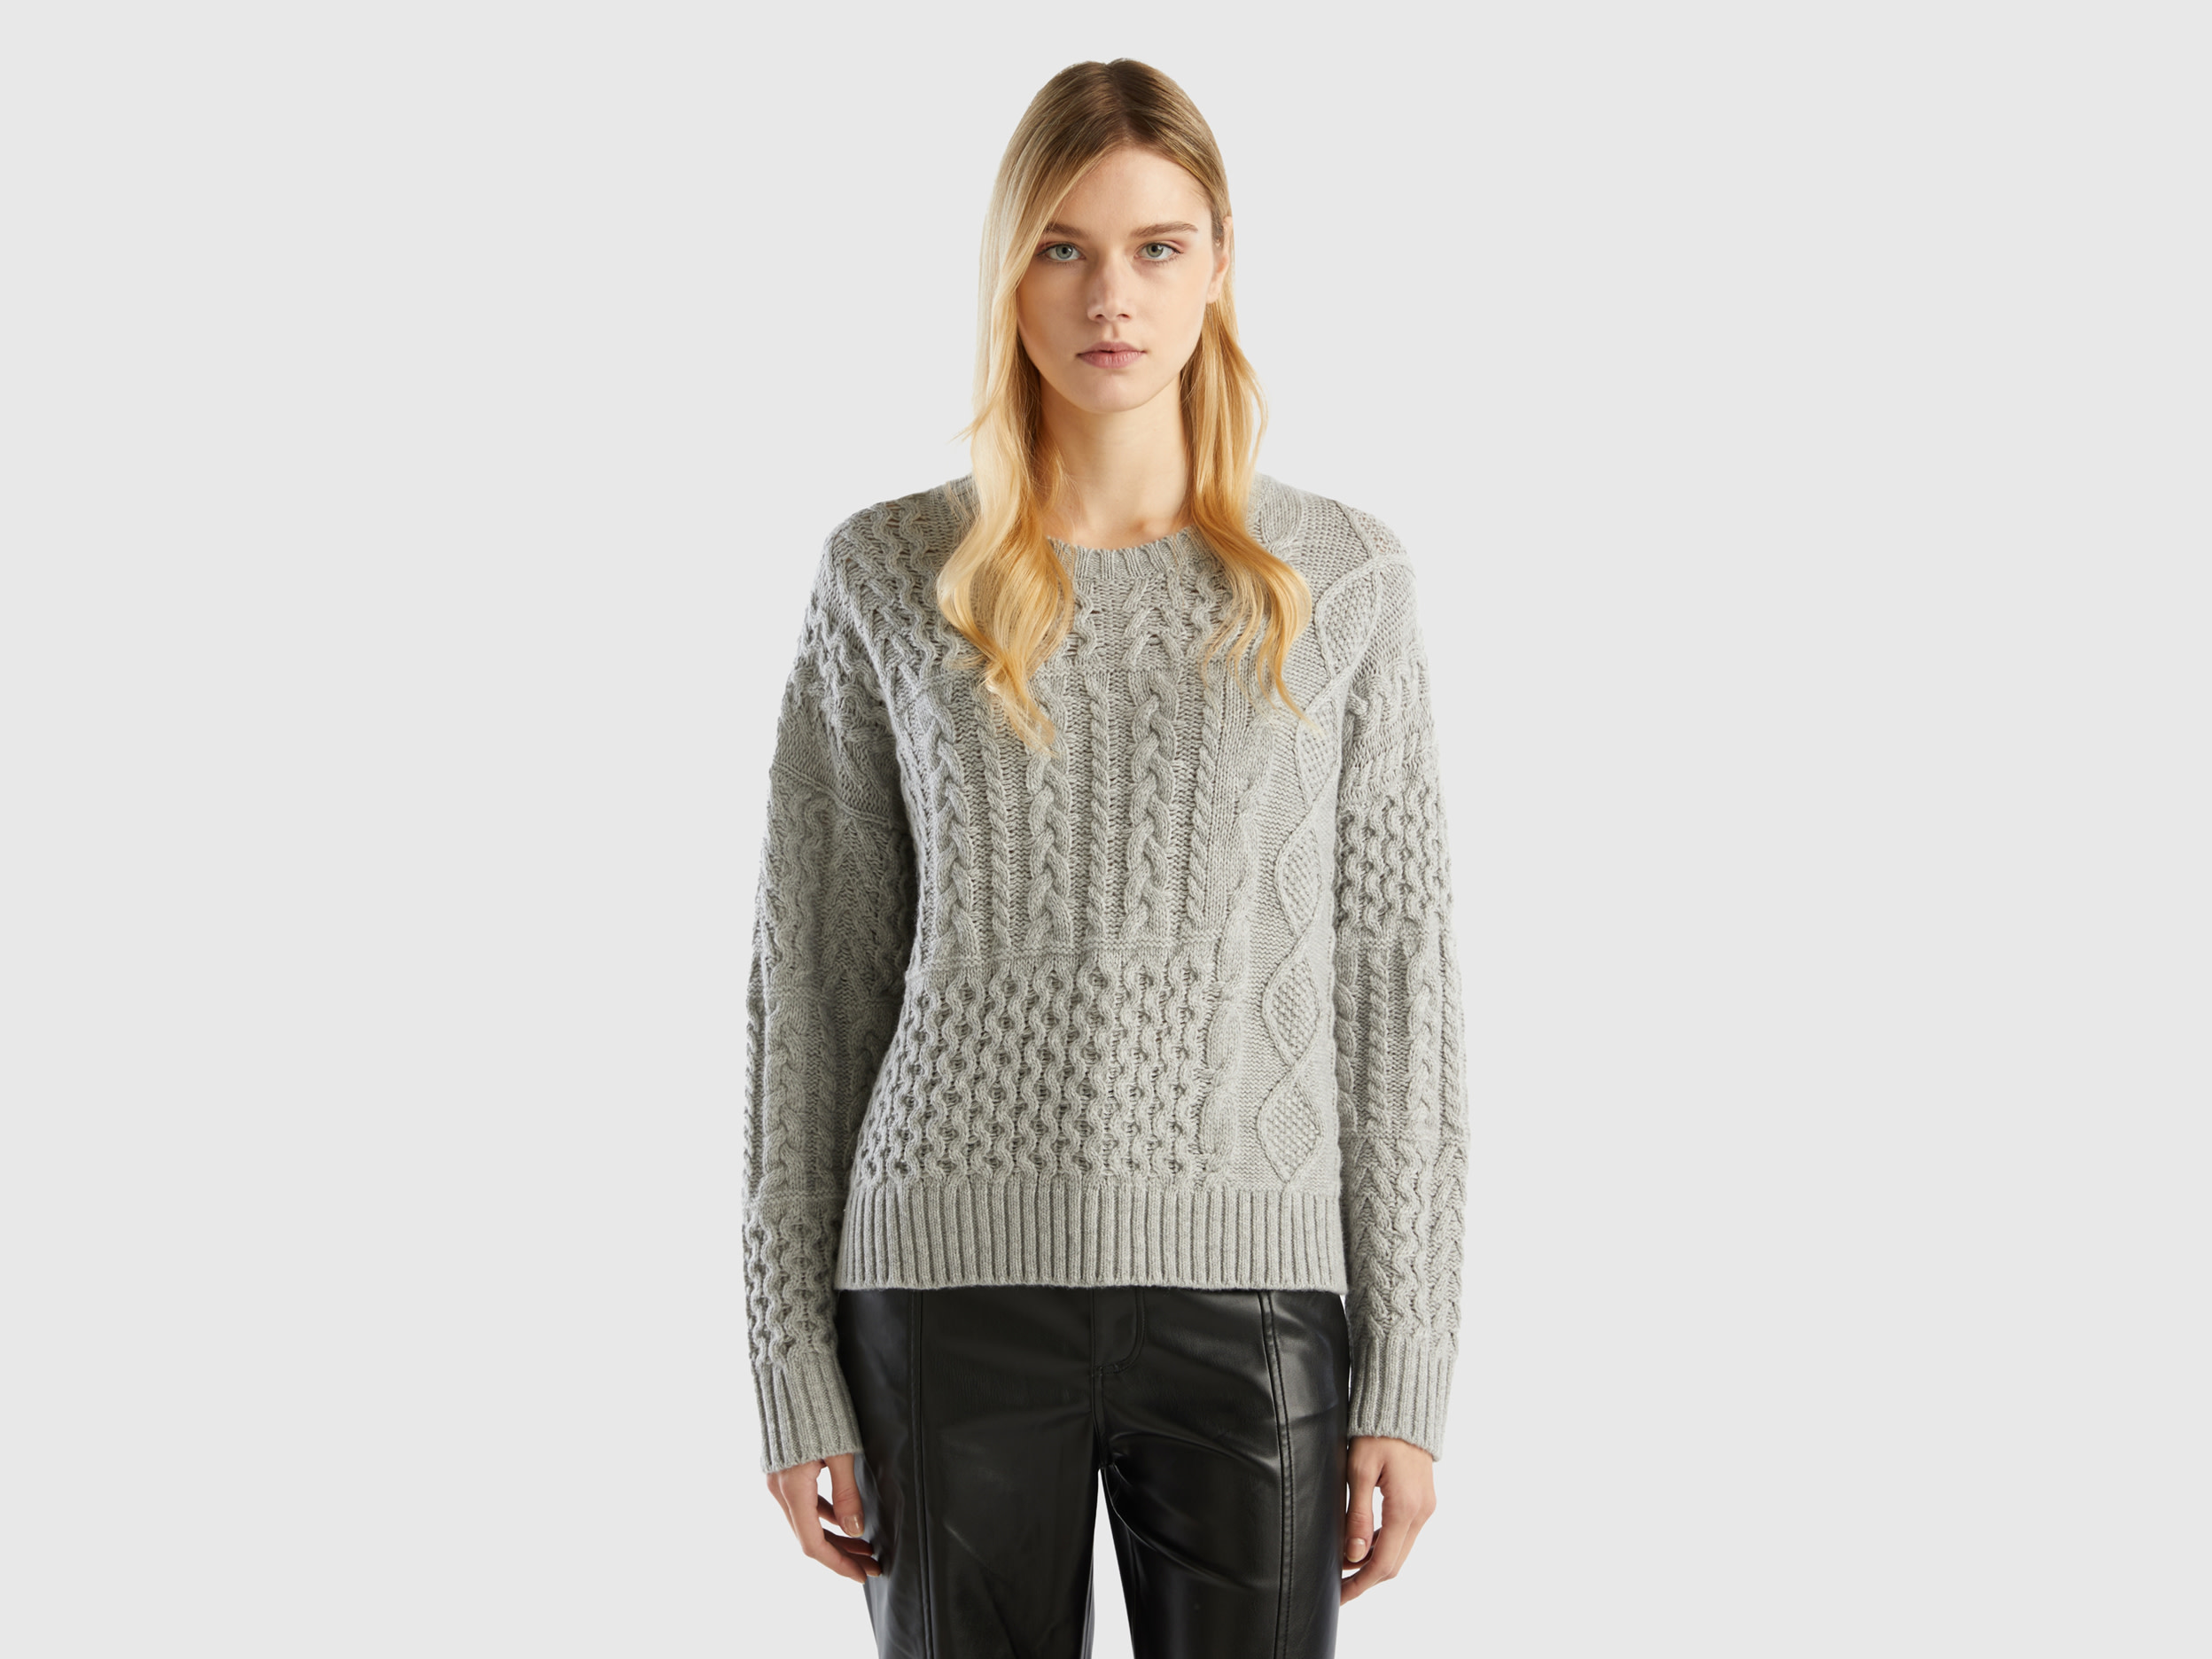 Benetton, Knit Patchwork Sweater, size L-XL, Light Gray, Women